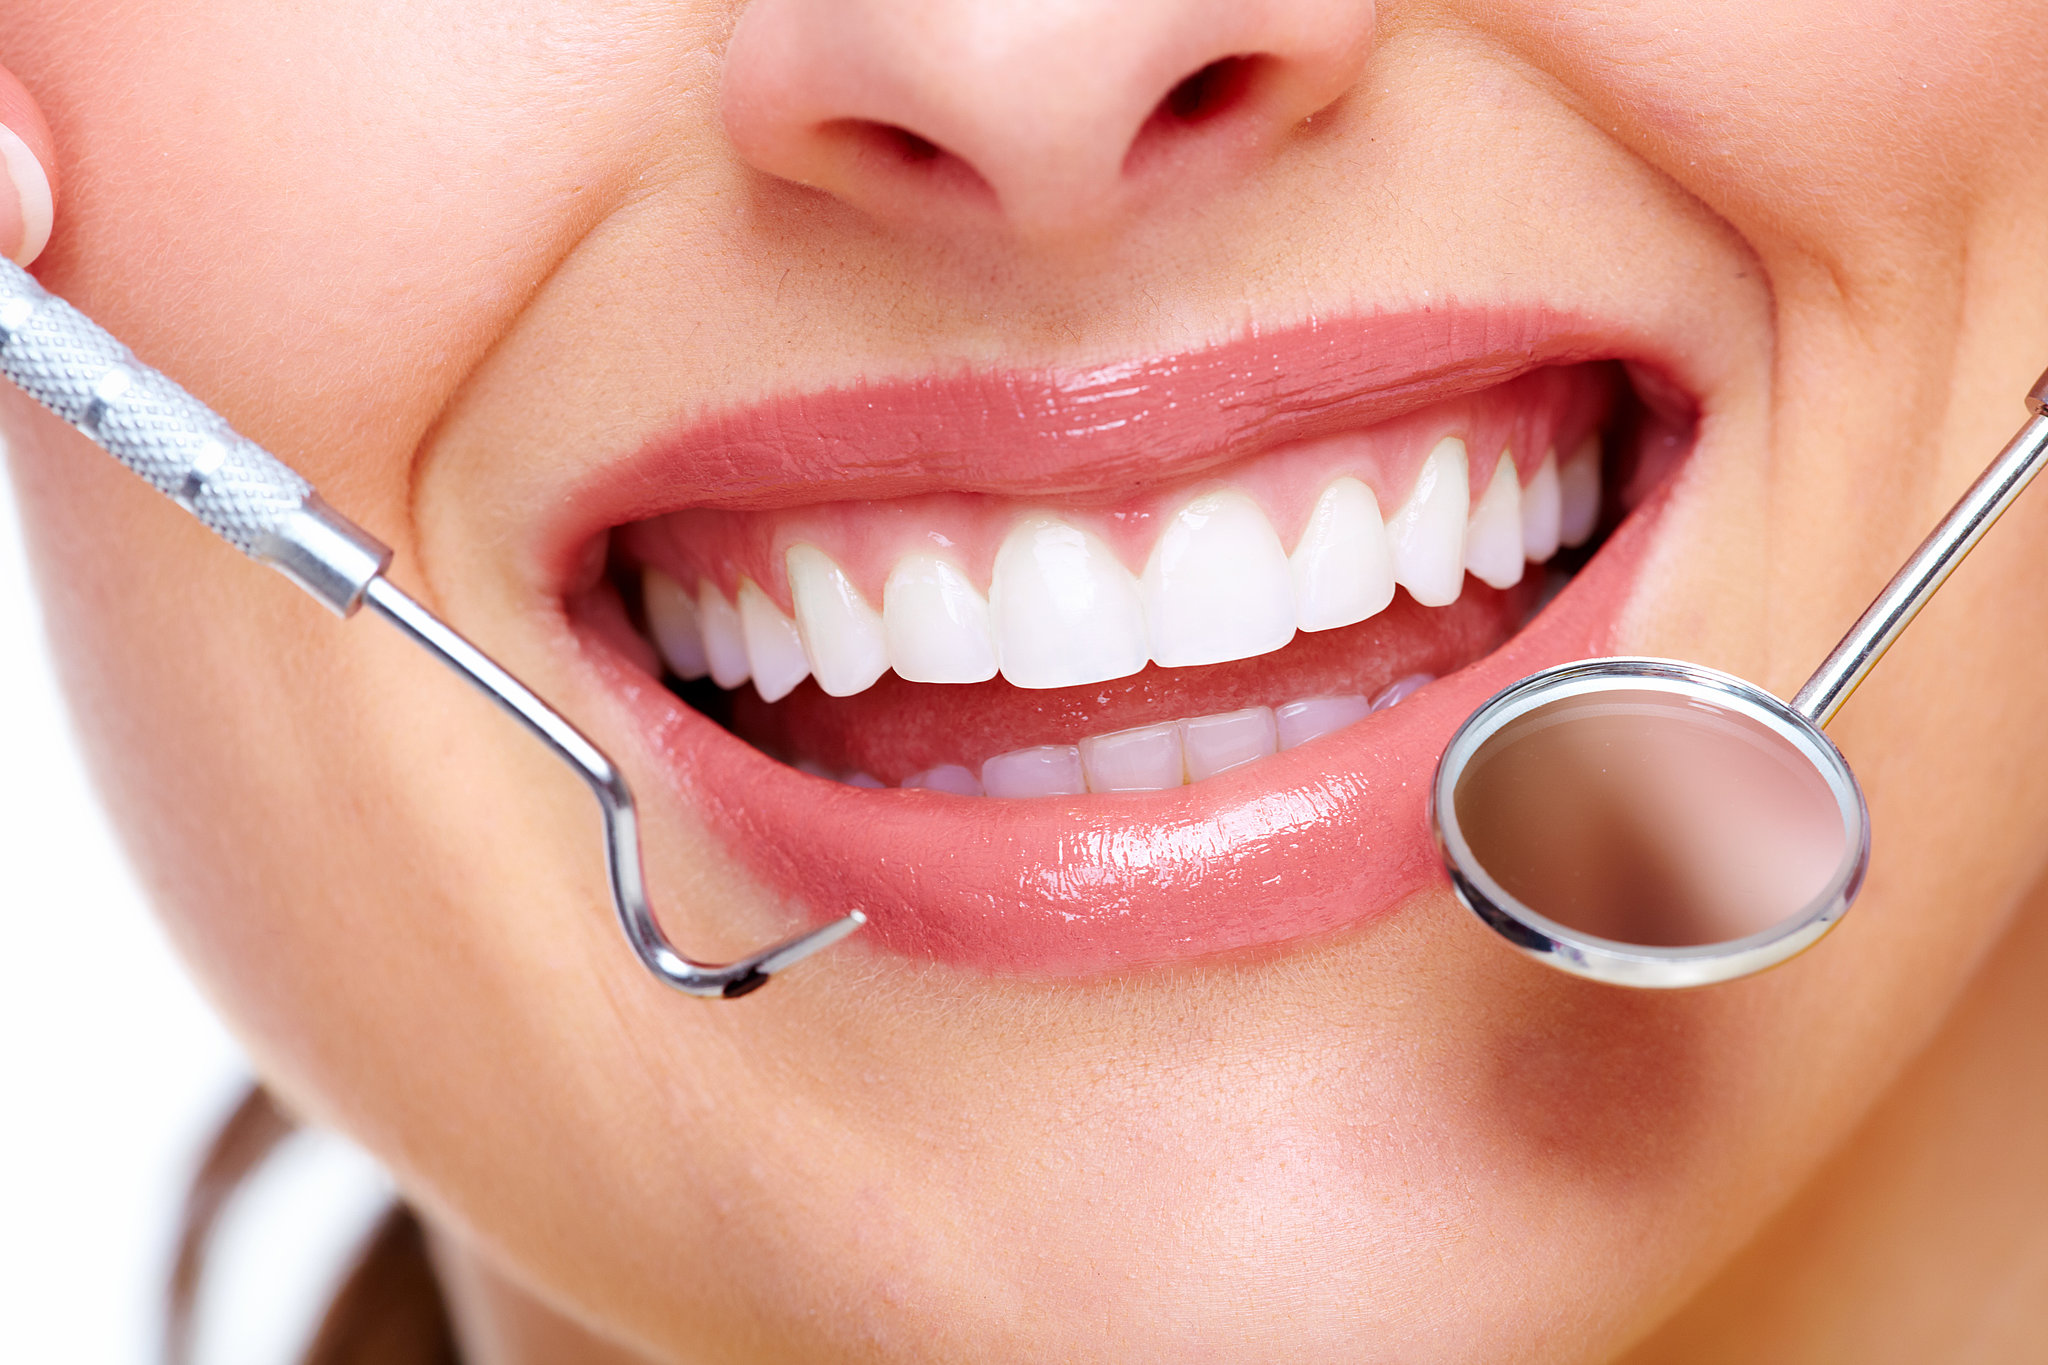 Τα οδοντικά εμφυτεύματα σας χαρίζουν την χαμένη σας αυτοπεποίθηση